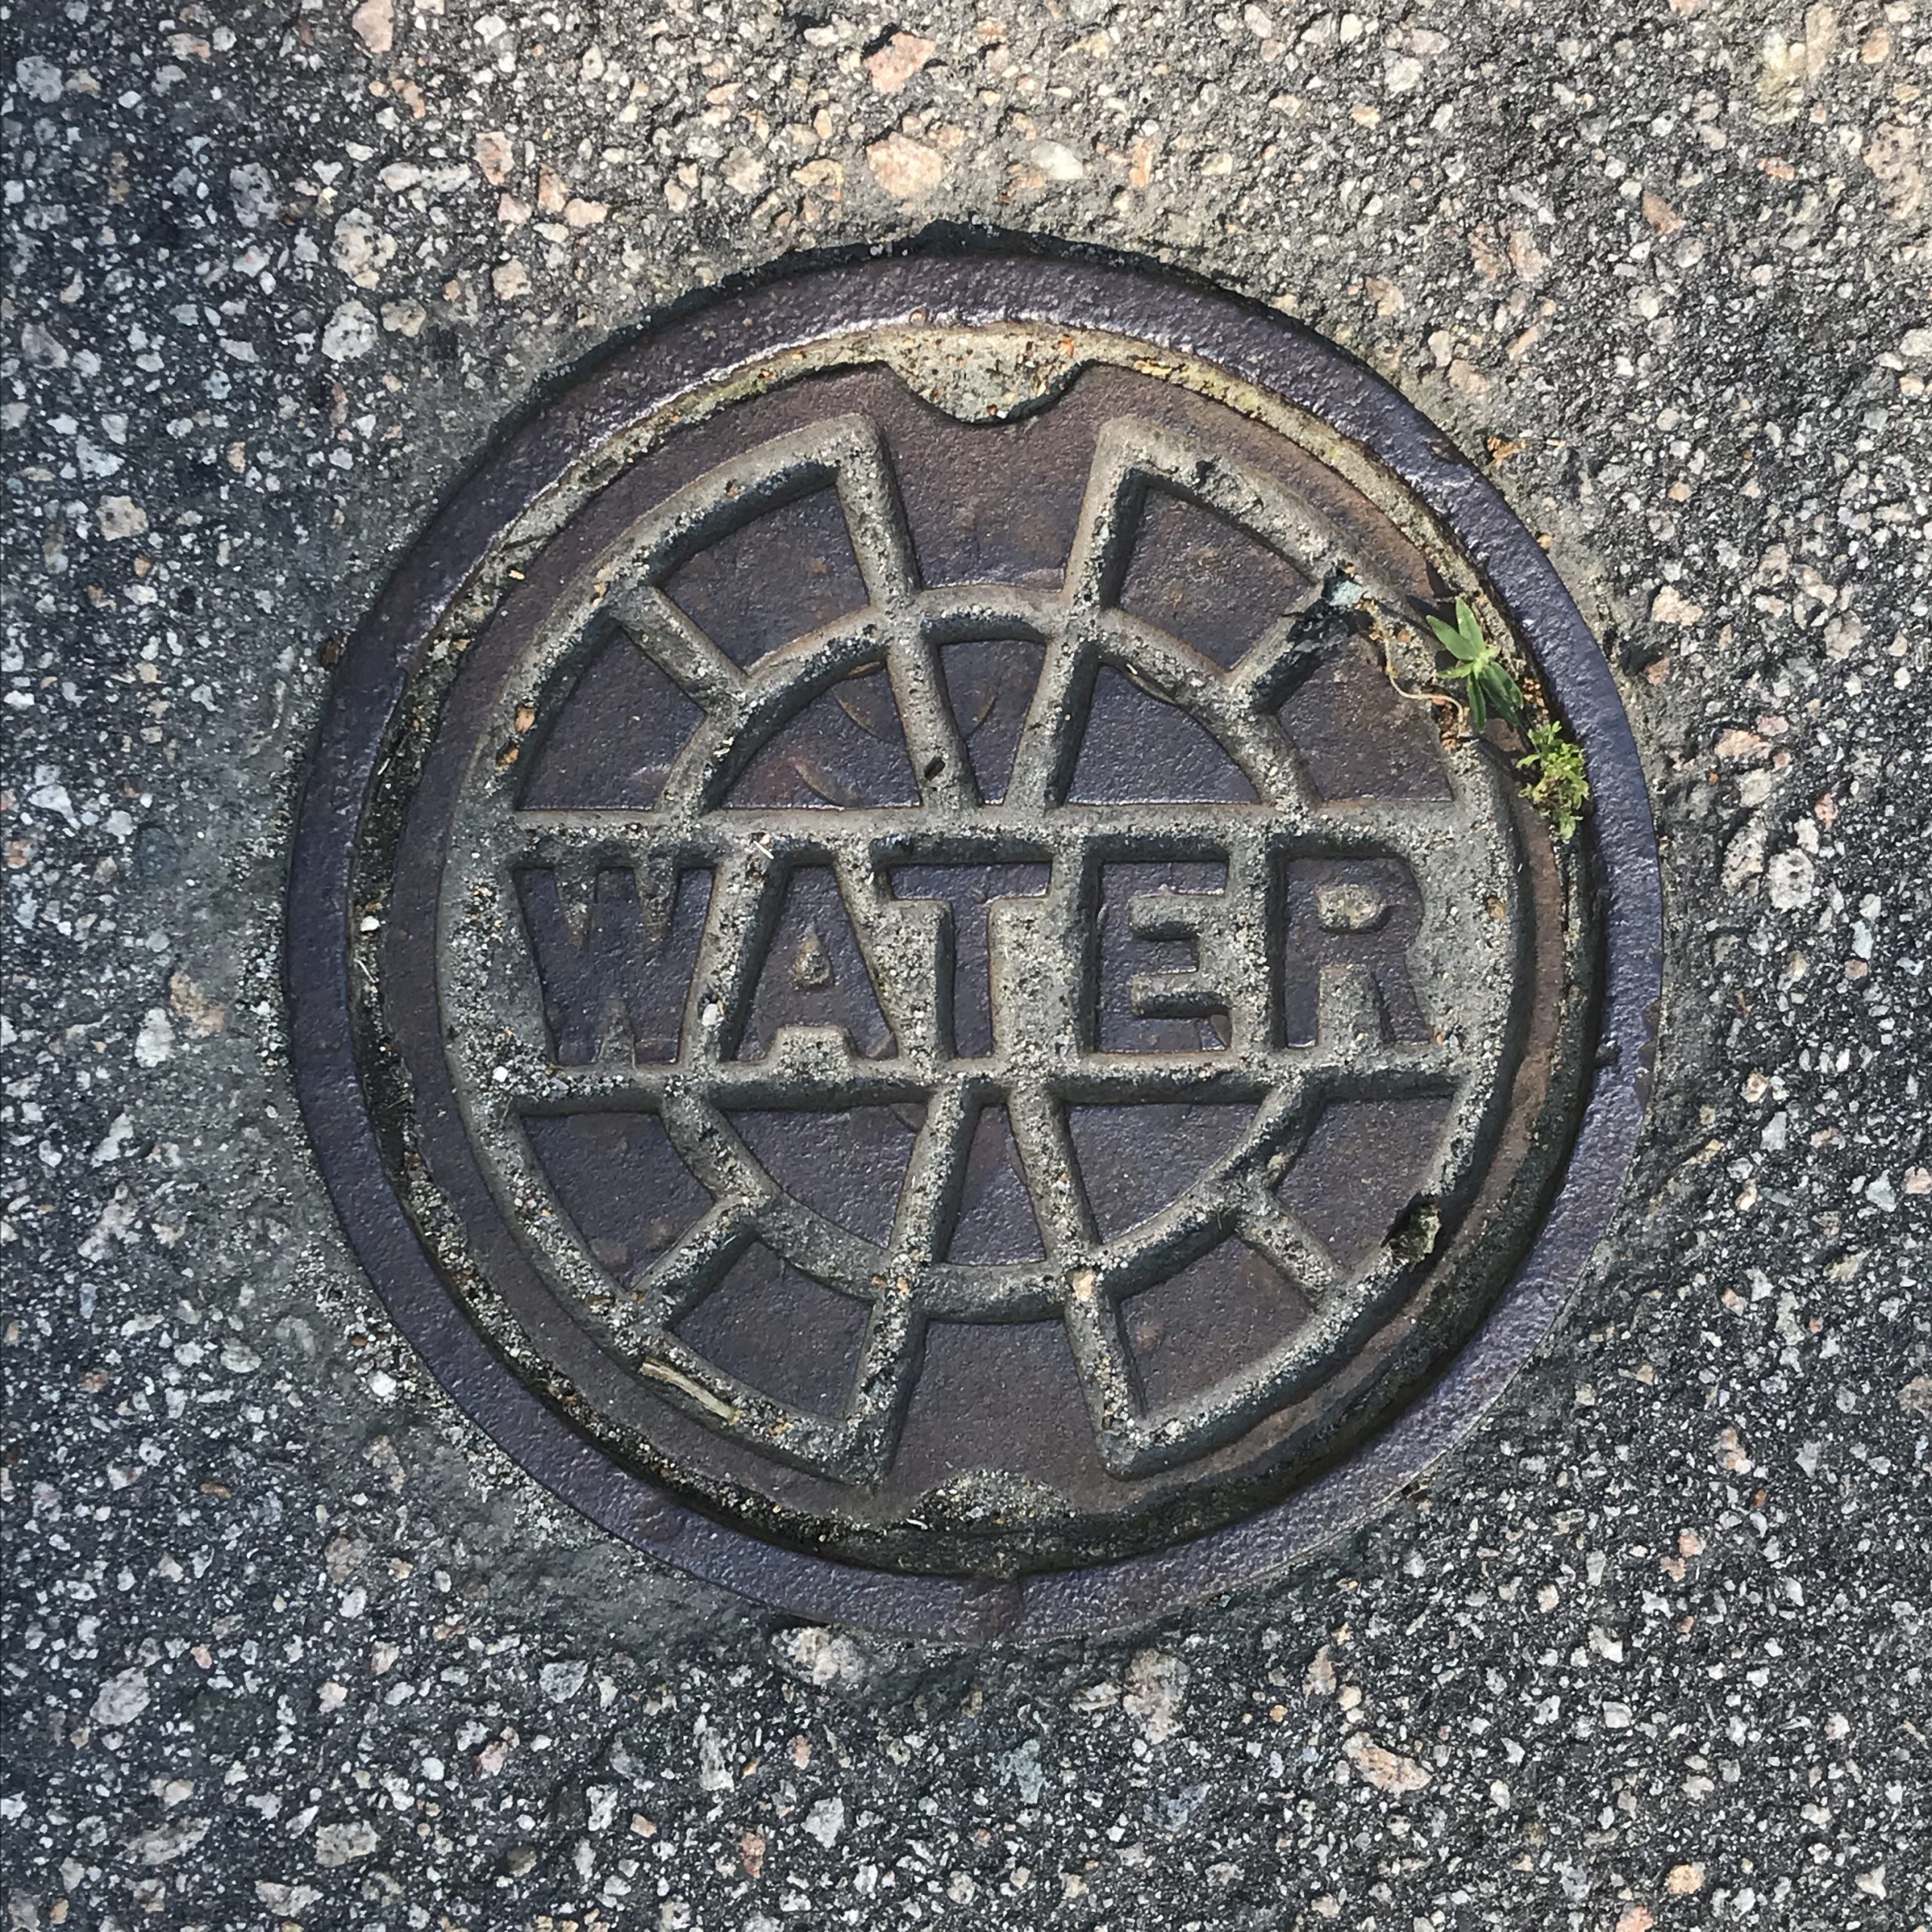 Water Meter Cover